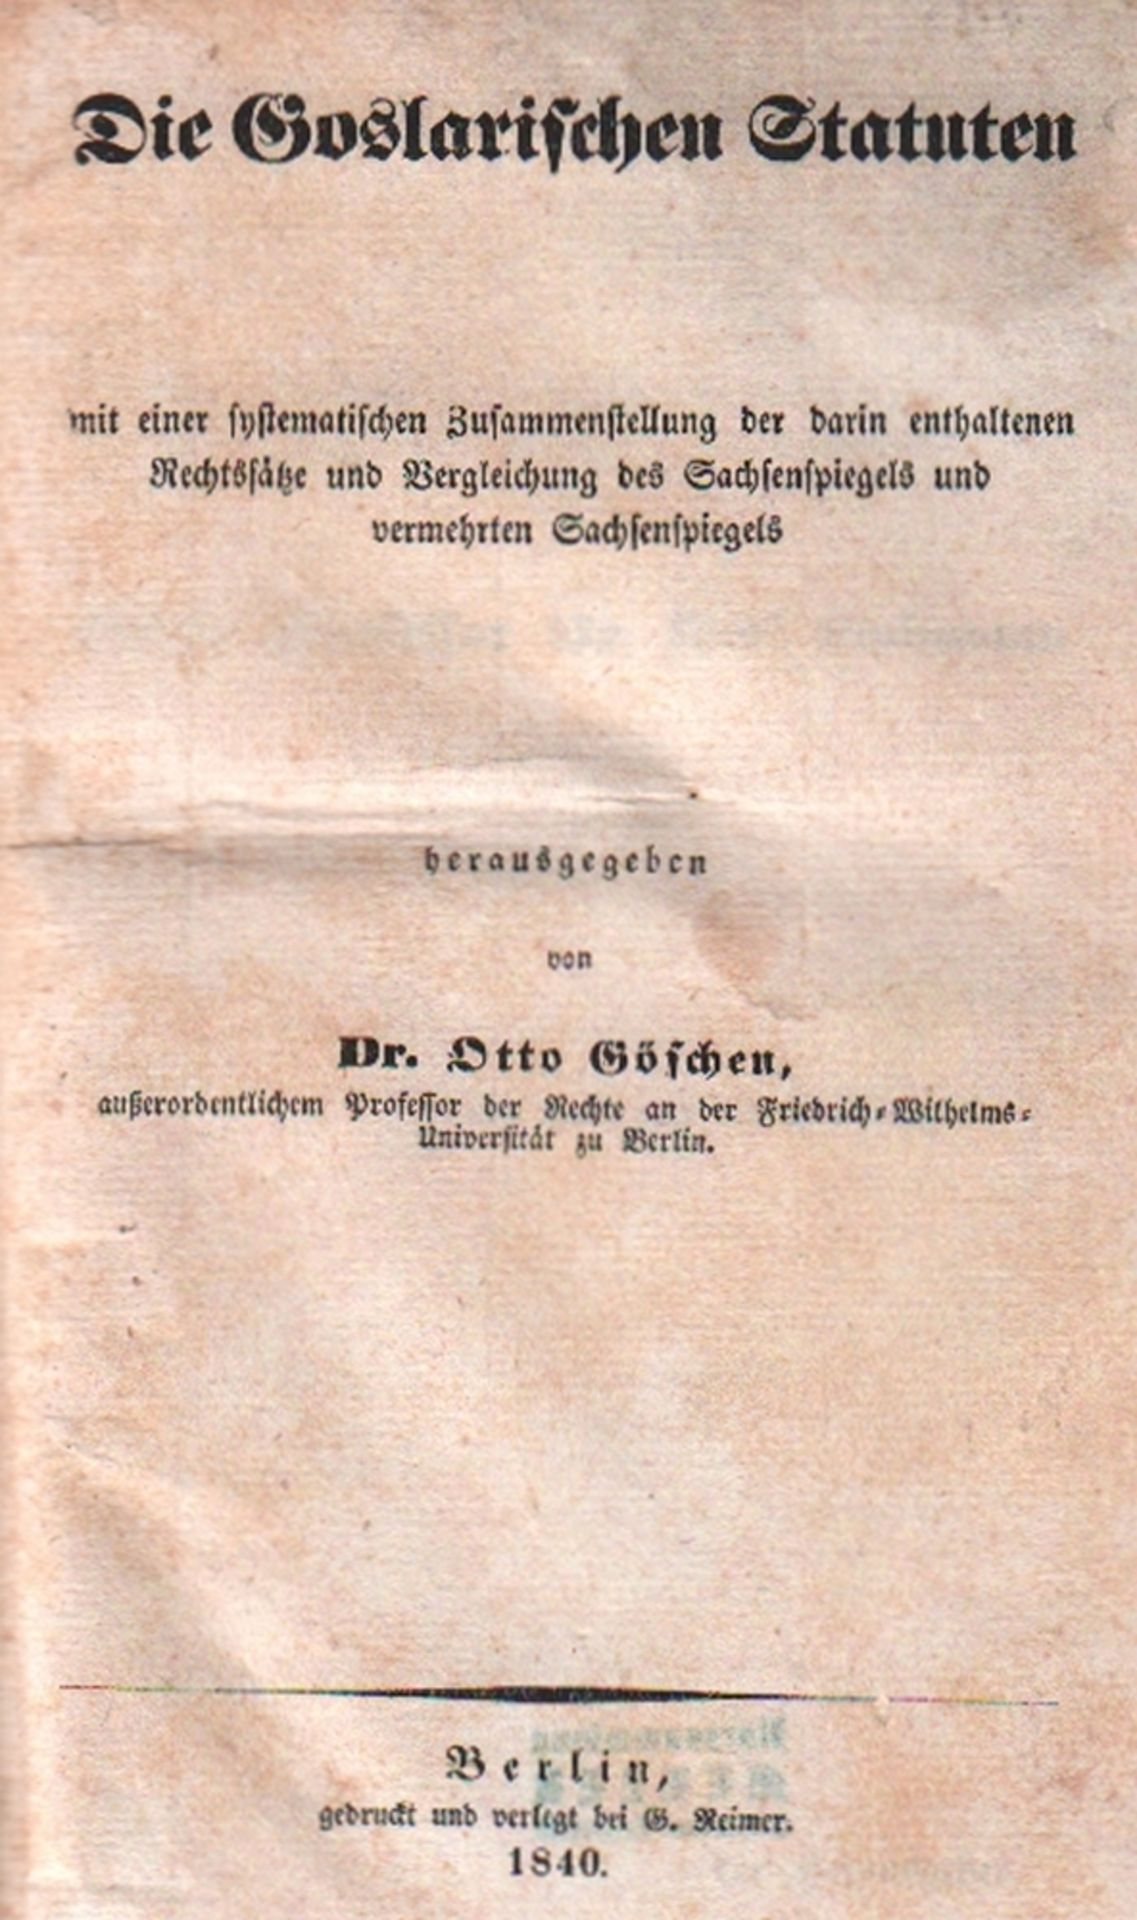 Goslar. Göschen, Otto. (Hrsg.) Die Goslarischen Statuten, mit einer systematischen